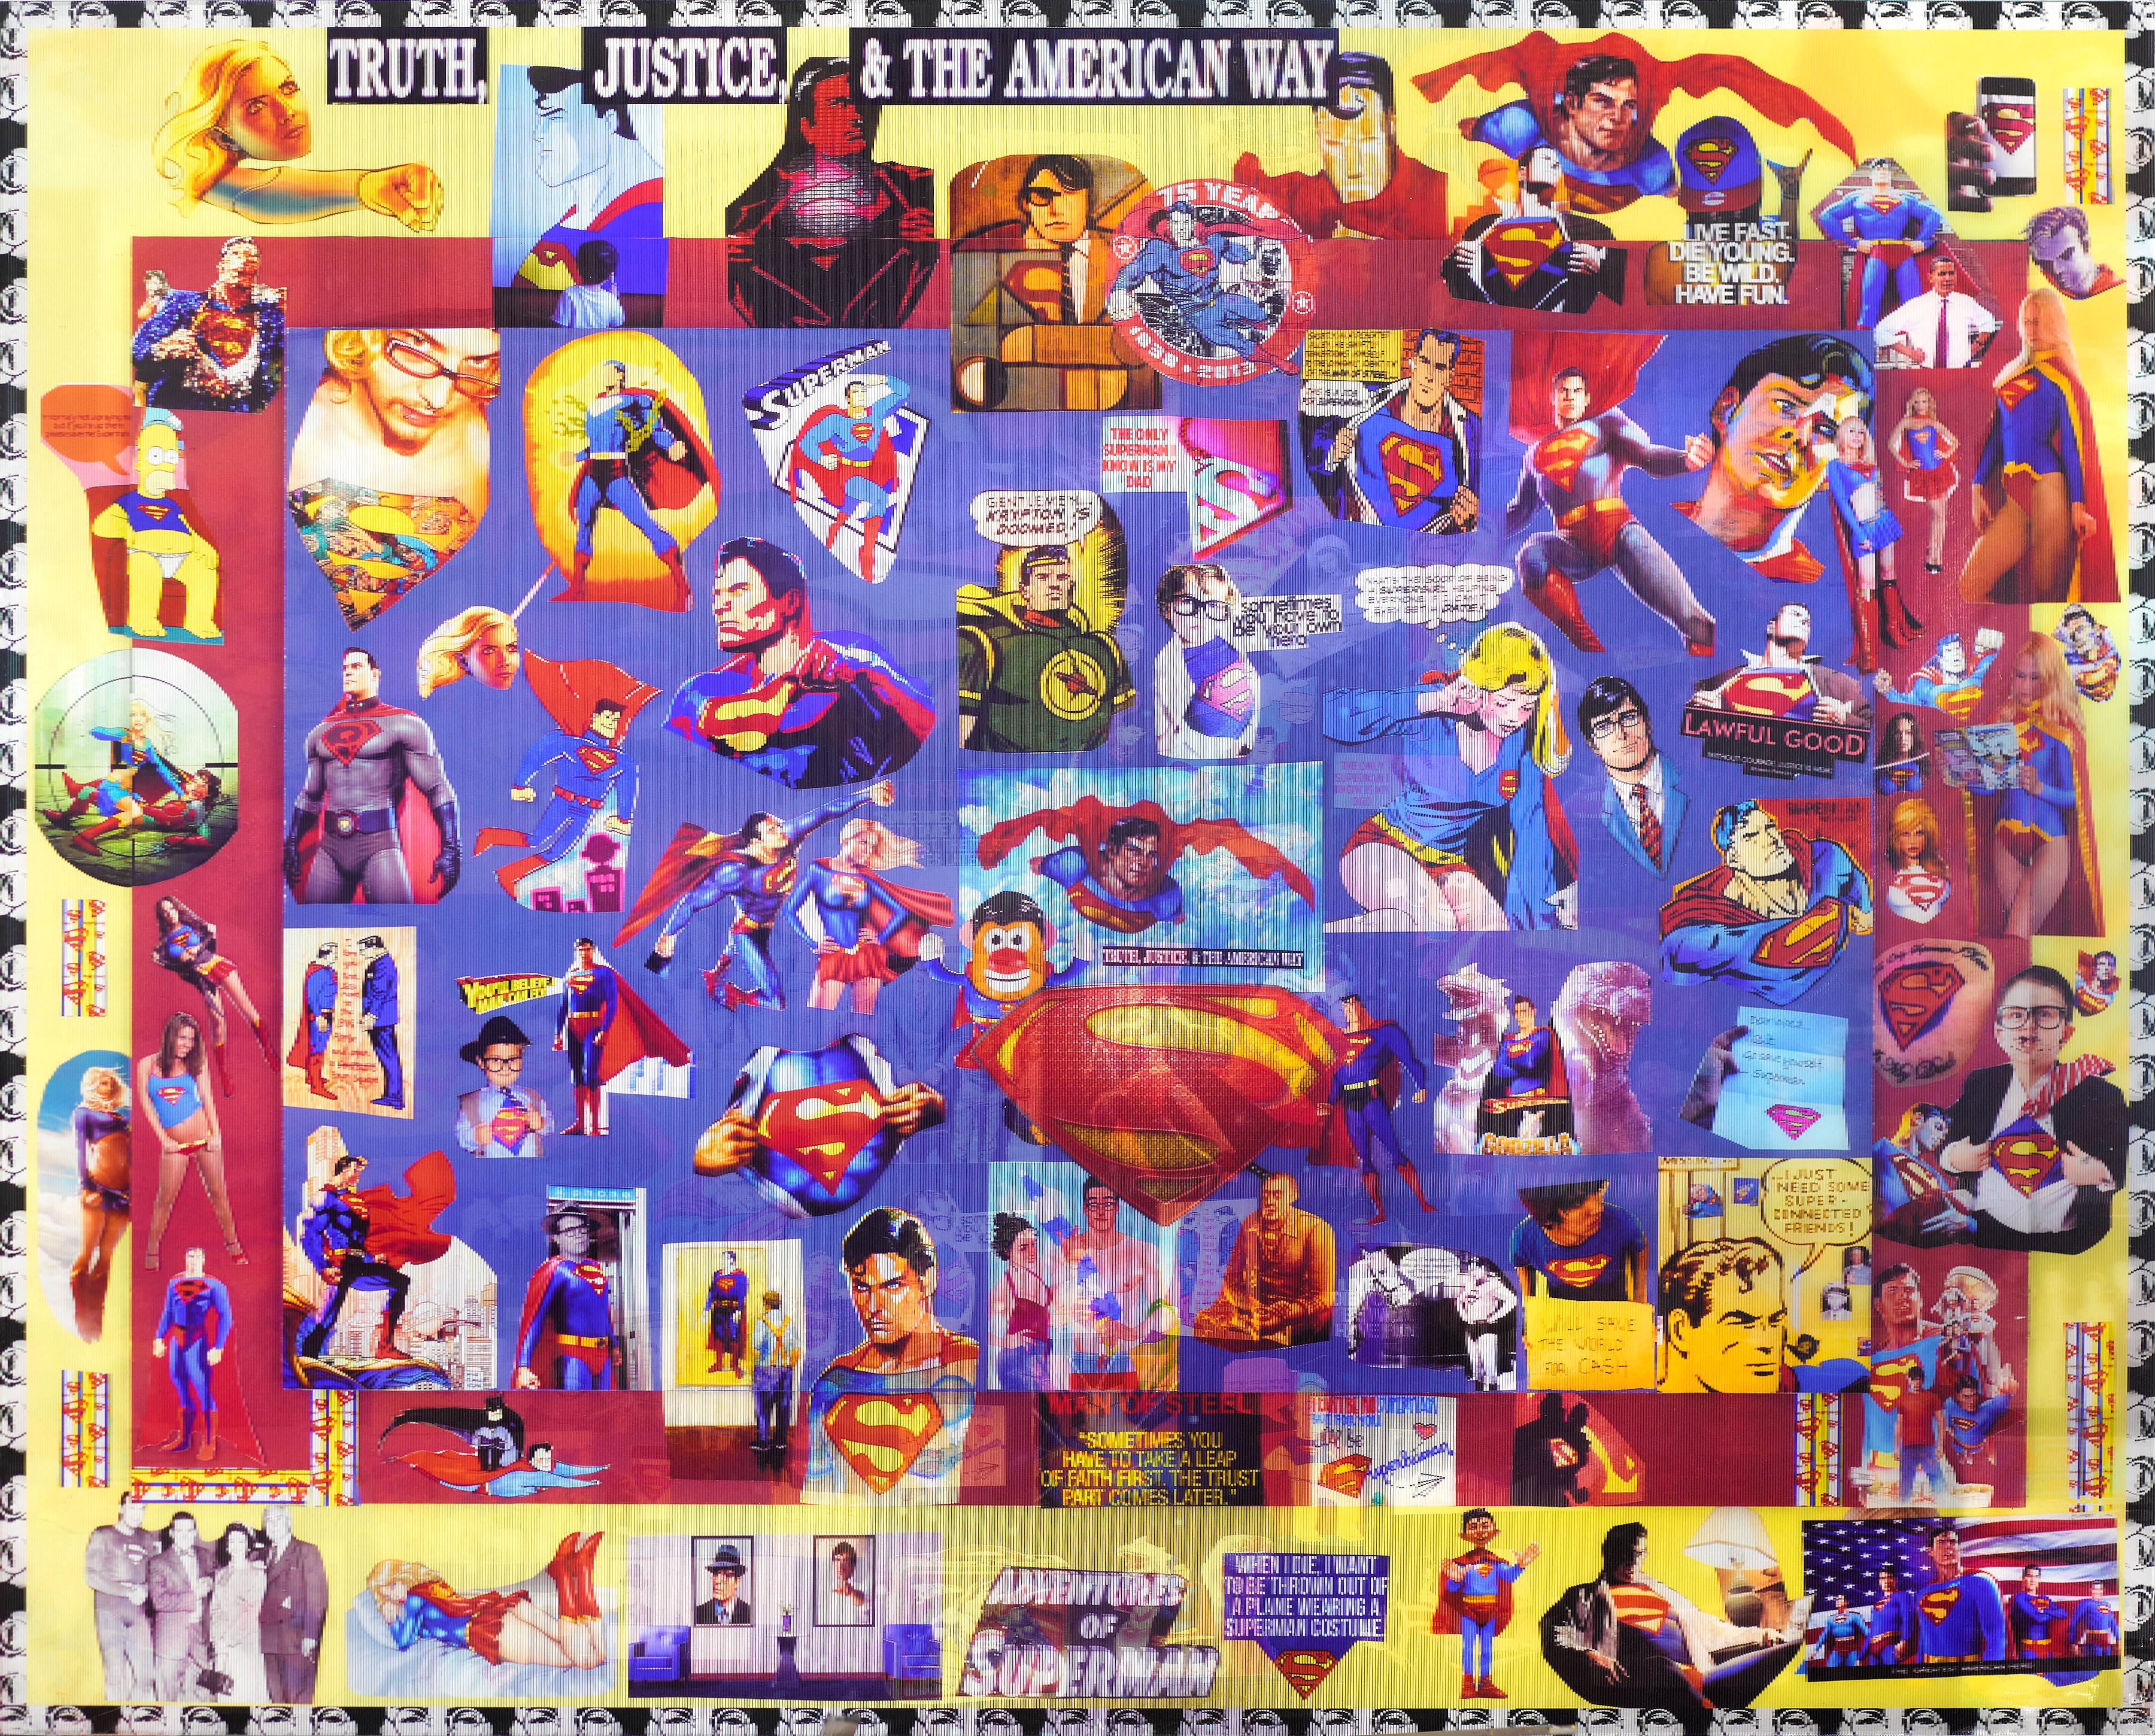 superman : Truth, Justice, and the American Way par DJ Leon, 2013. La pièce mesure 32 x 40 pouces. Cette impression lenticulaire incorpore, s'approprie et combine des images et des textes de Superman. Les images lenticulaires se déplacent lorsque le